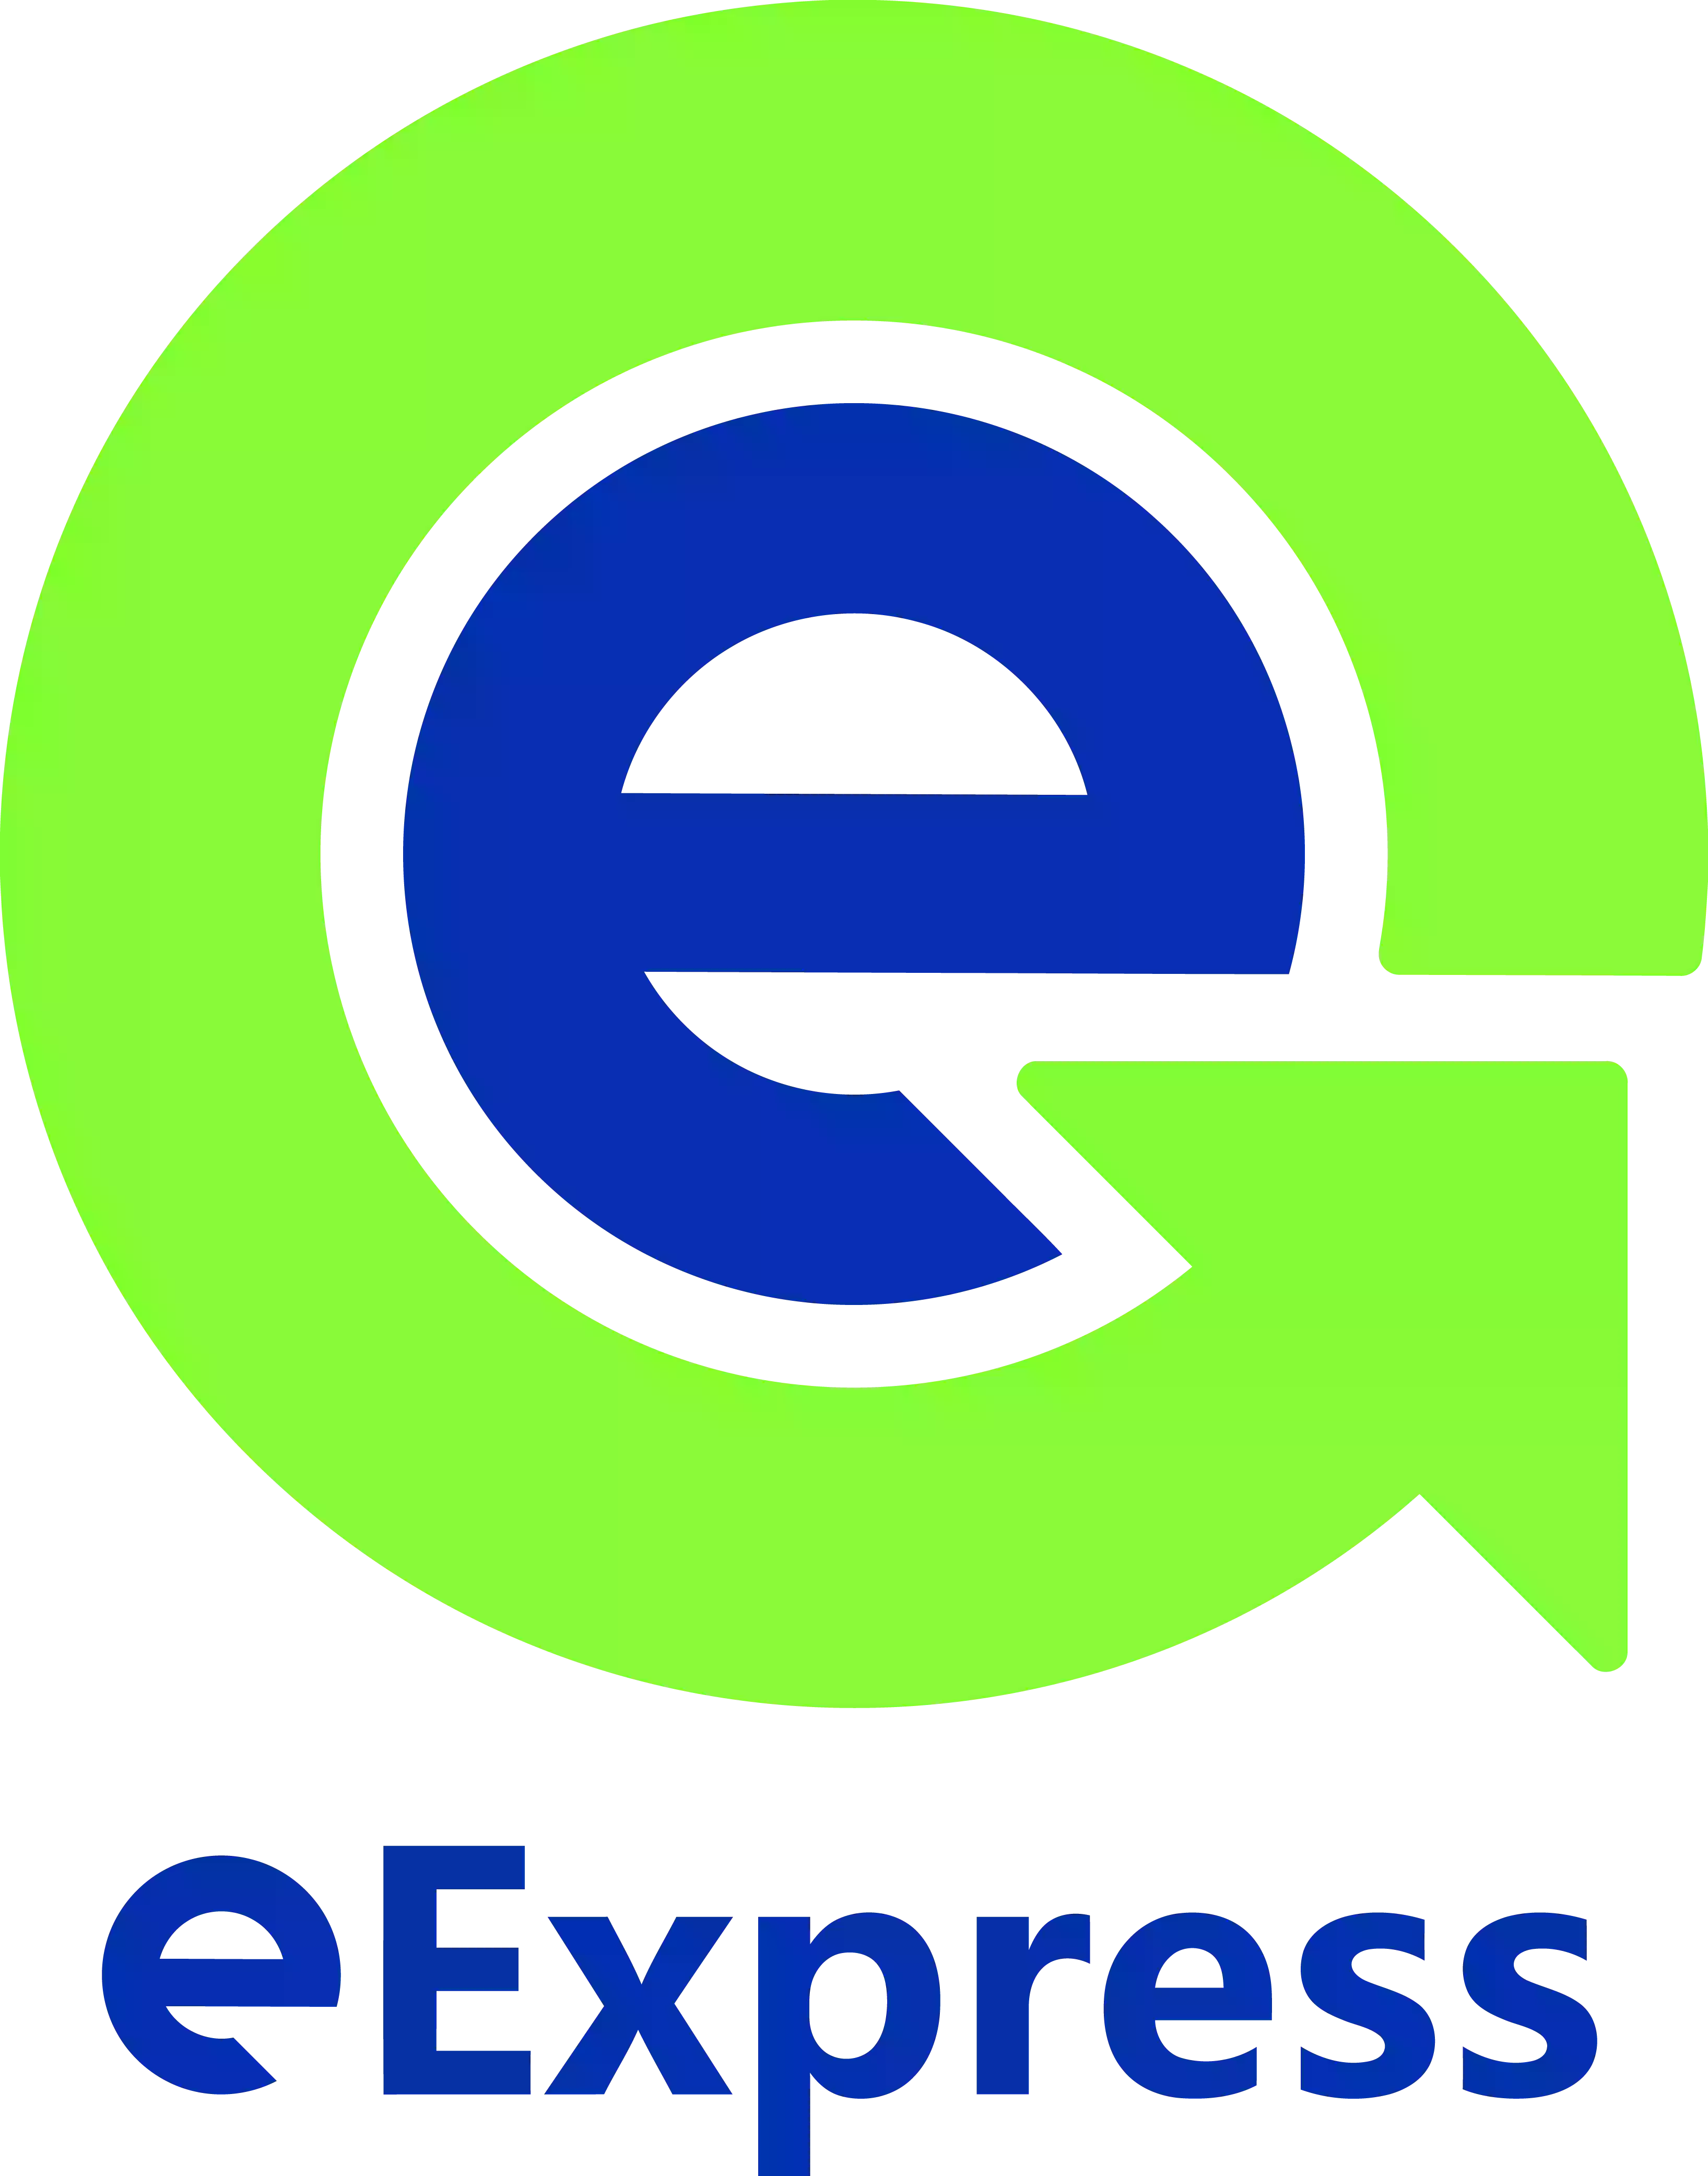 eExpress Travel Center